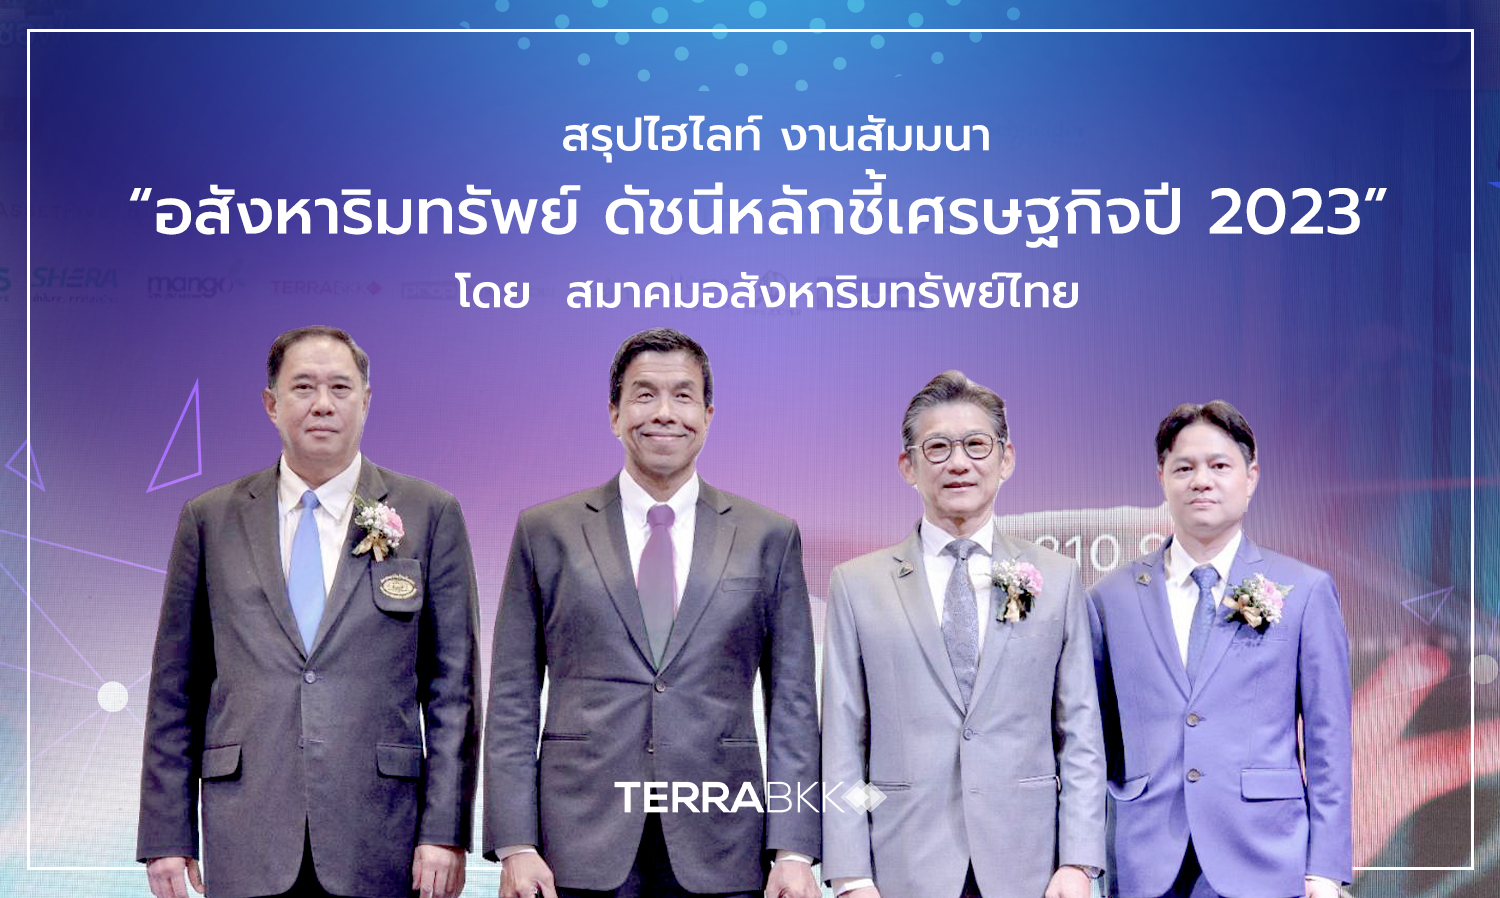 สรุปไฮไลท์ งานสัมมนา “อสังหาริมทรัพย์ ดัชนีหลักชี้เศรษฐกิจปี 2023”  โดย สมาคมอสังหาริมทรัพย์ไทย